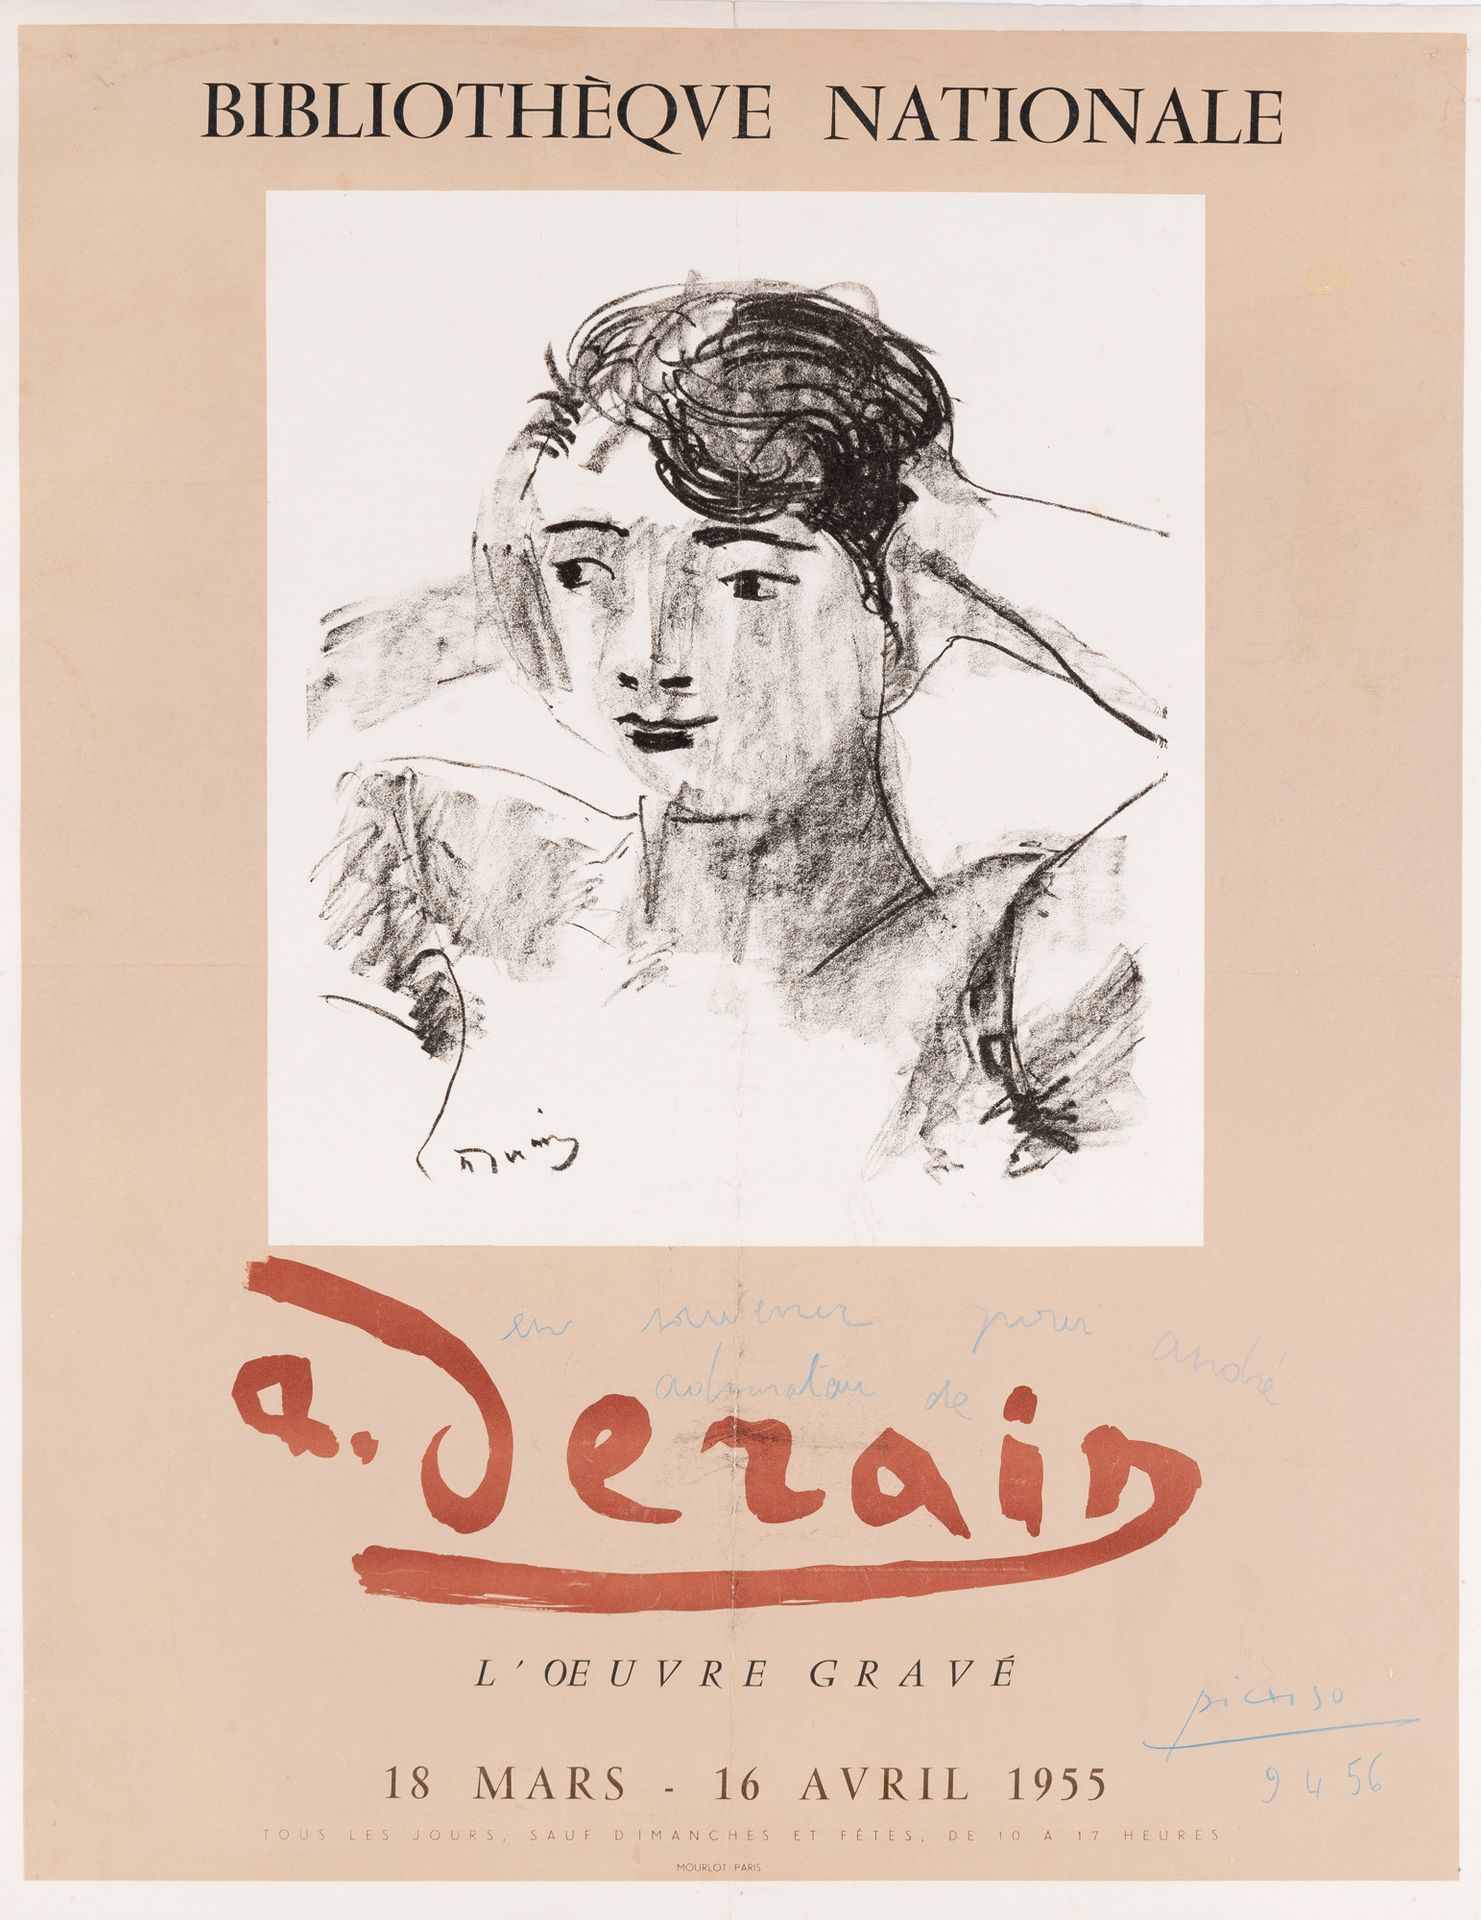 Pablo Picasso (1881-1973) Bibliothèque nationale, Derain, l'œuvre gravé, 1955.
A&hellip;